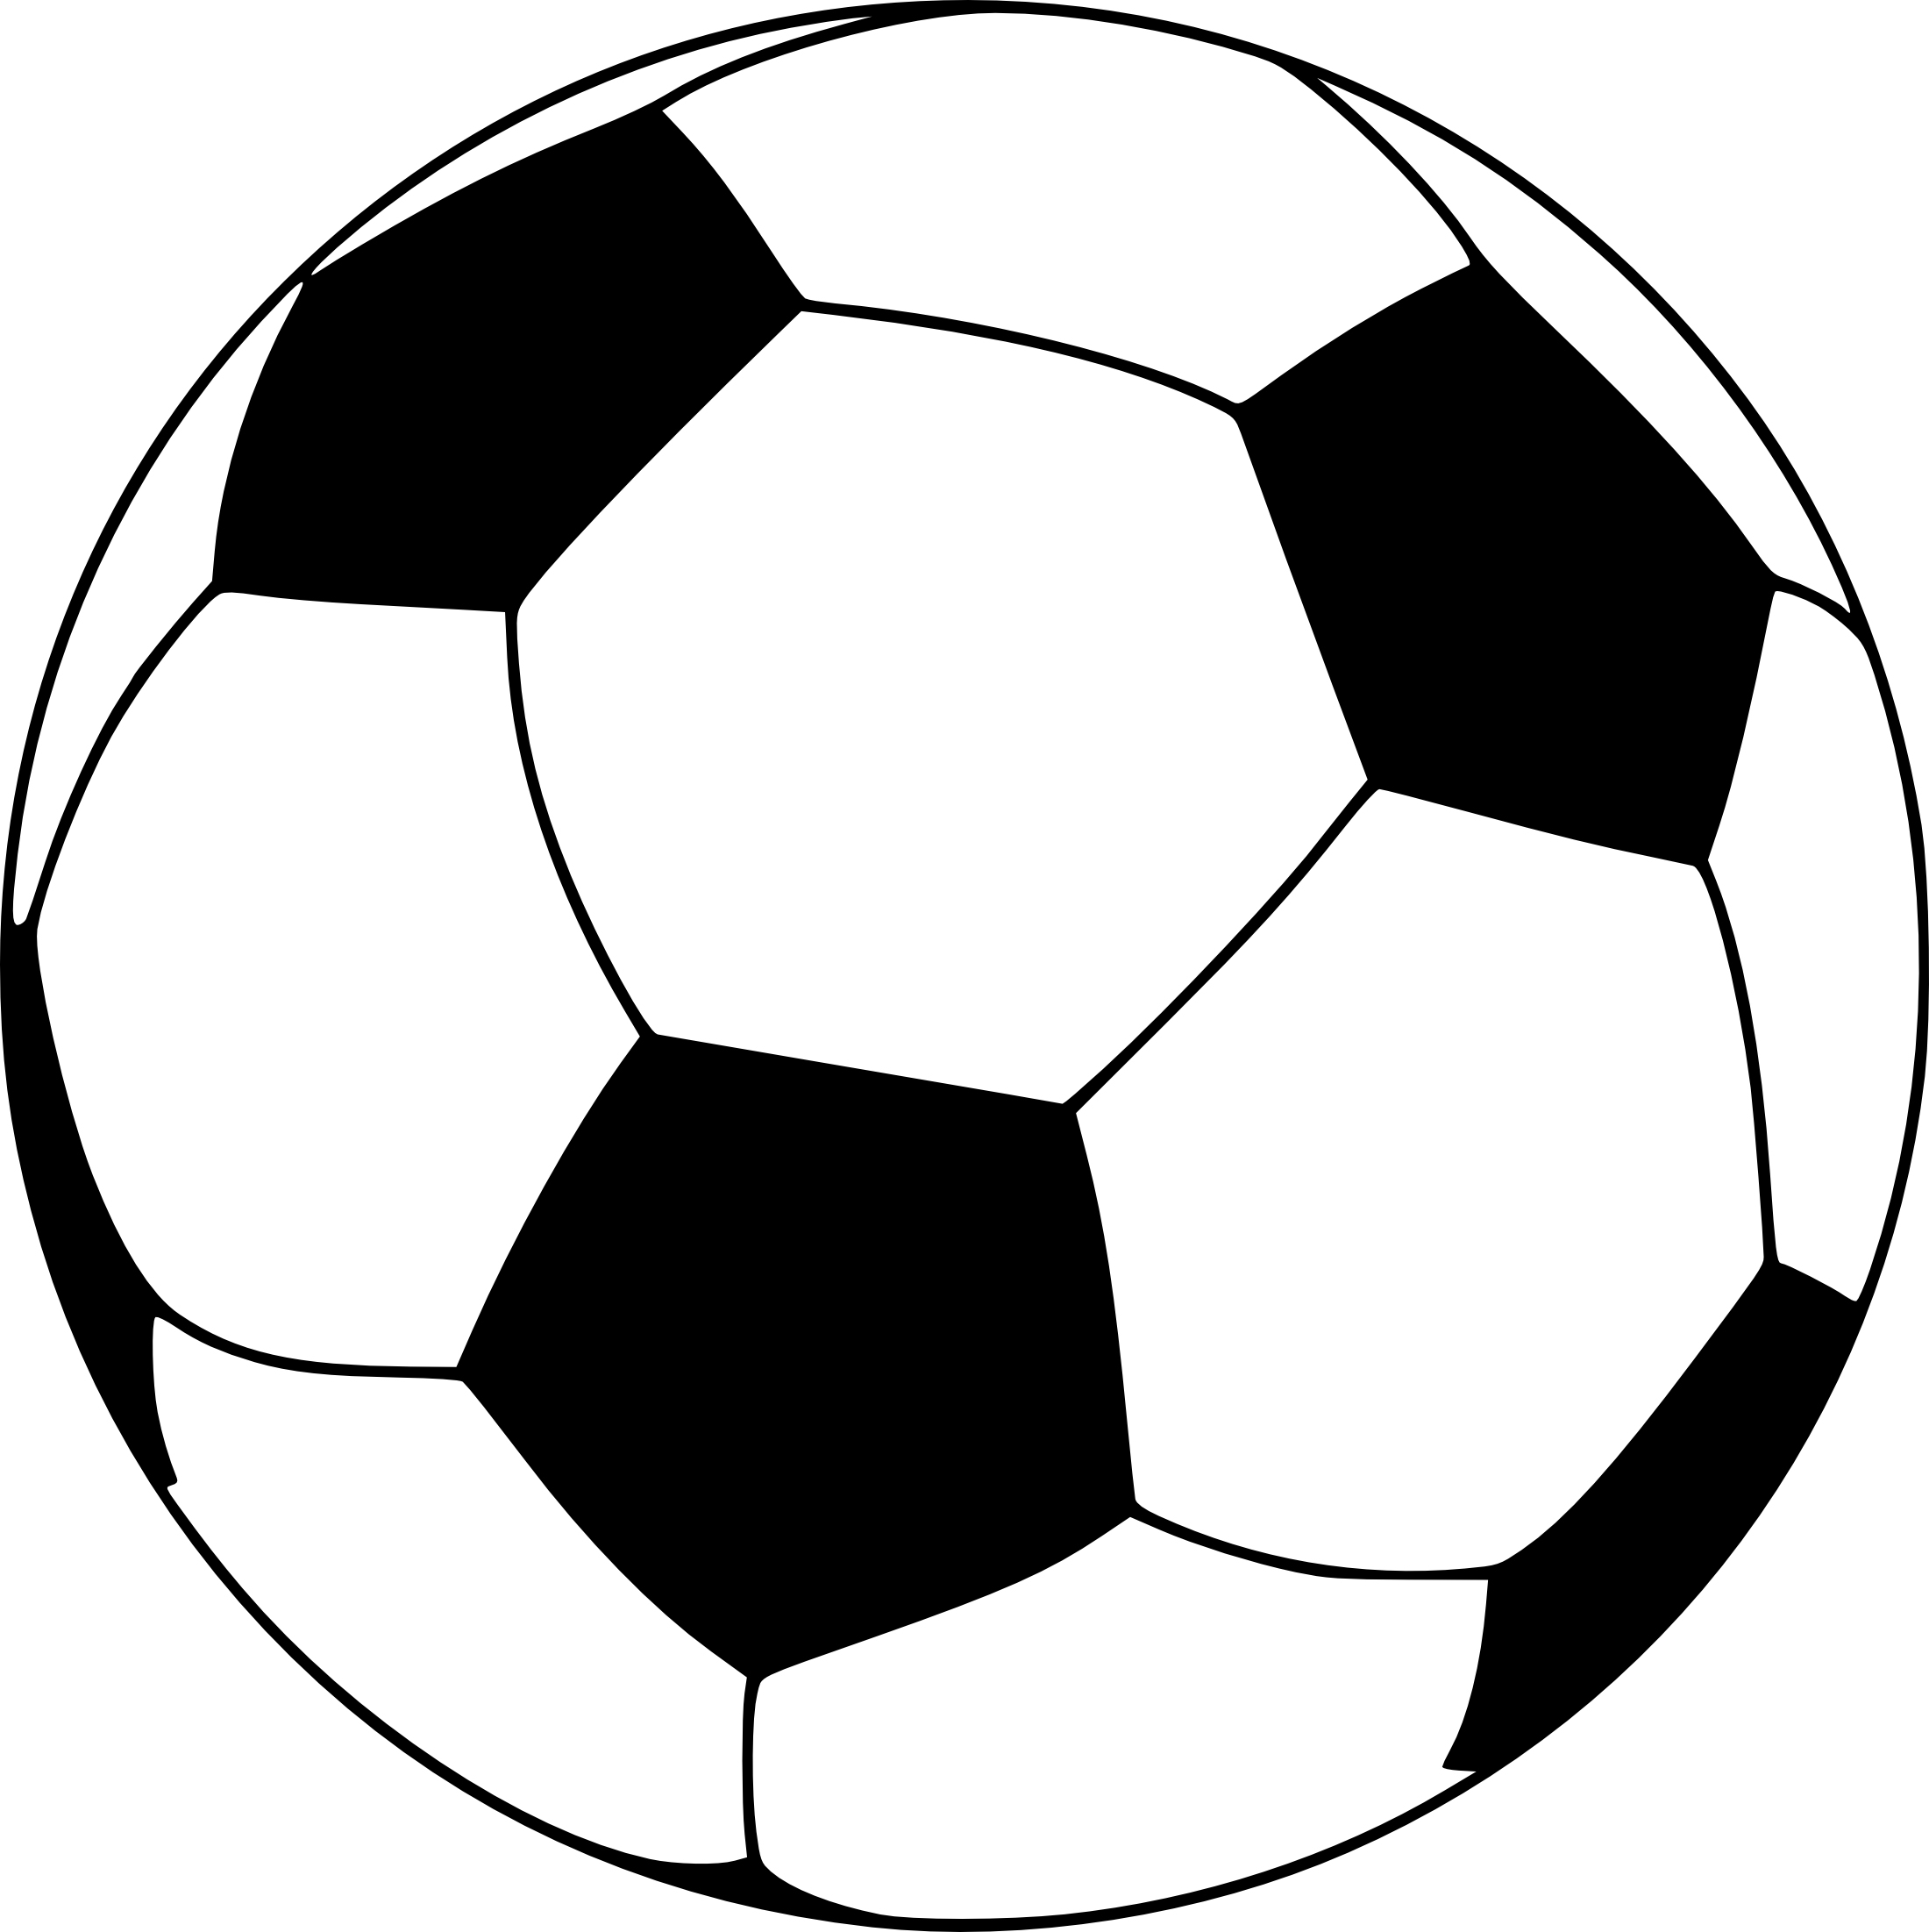 Coloriage Ballon De Football À Imprimer serapportantà Coloriage À Imprimer Football